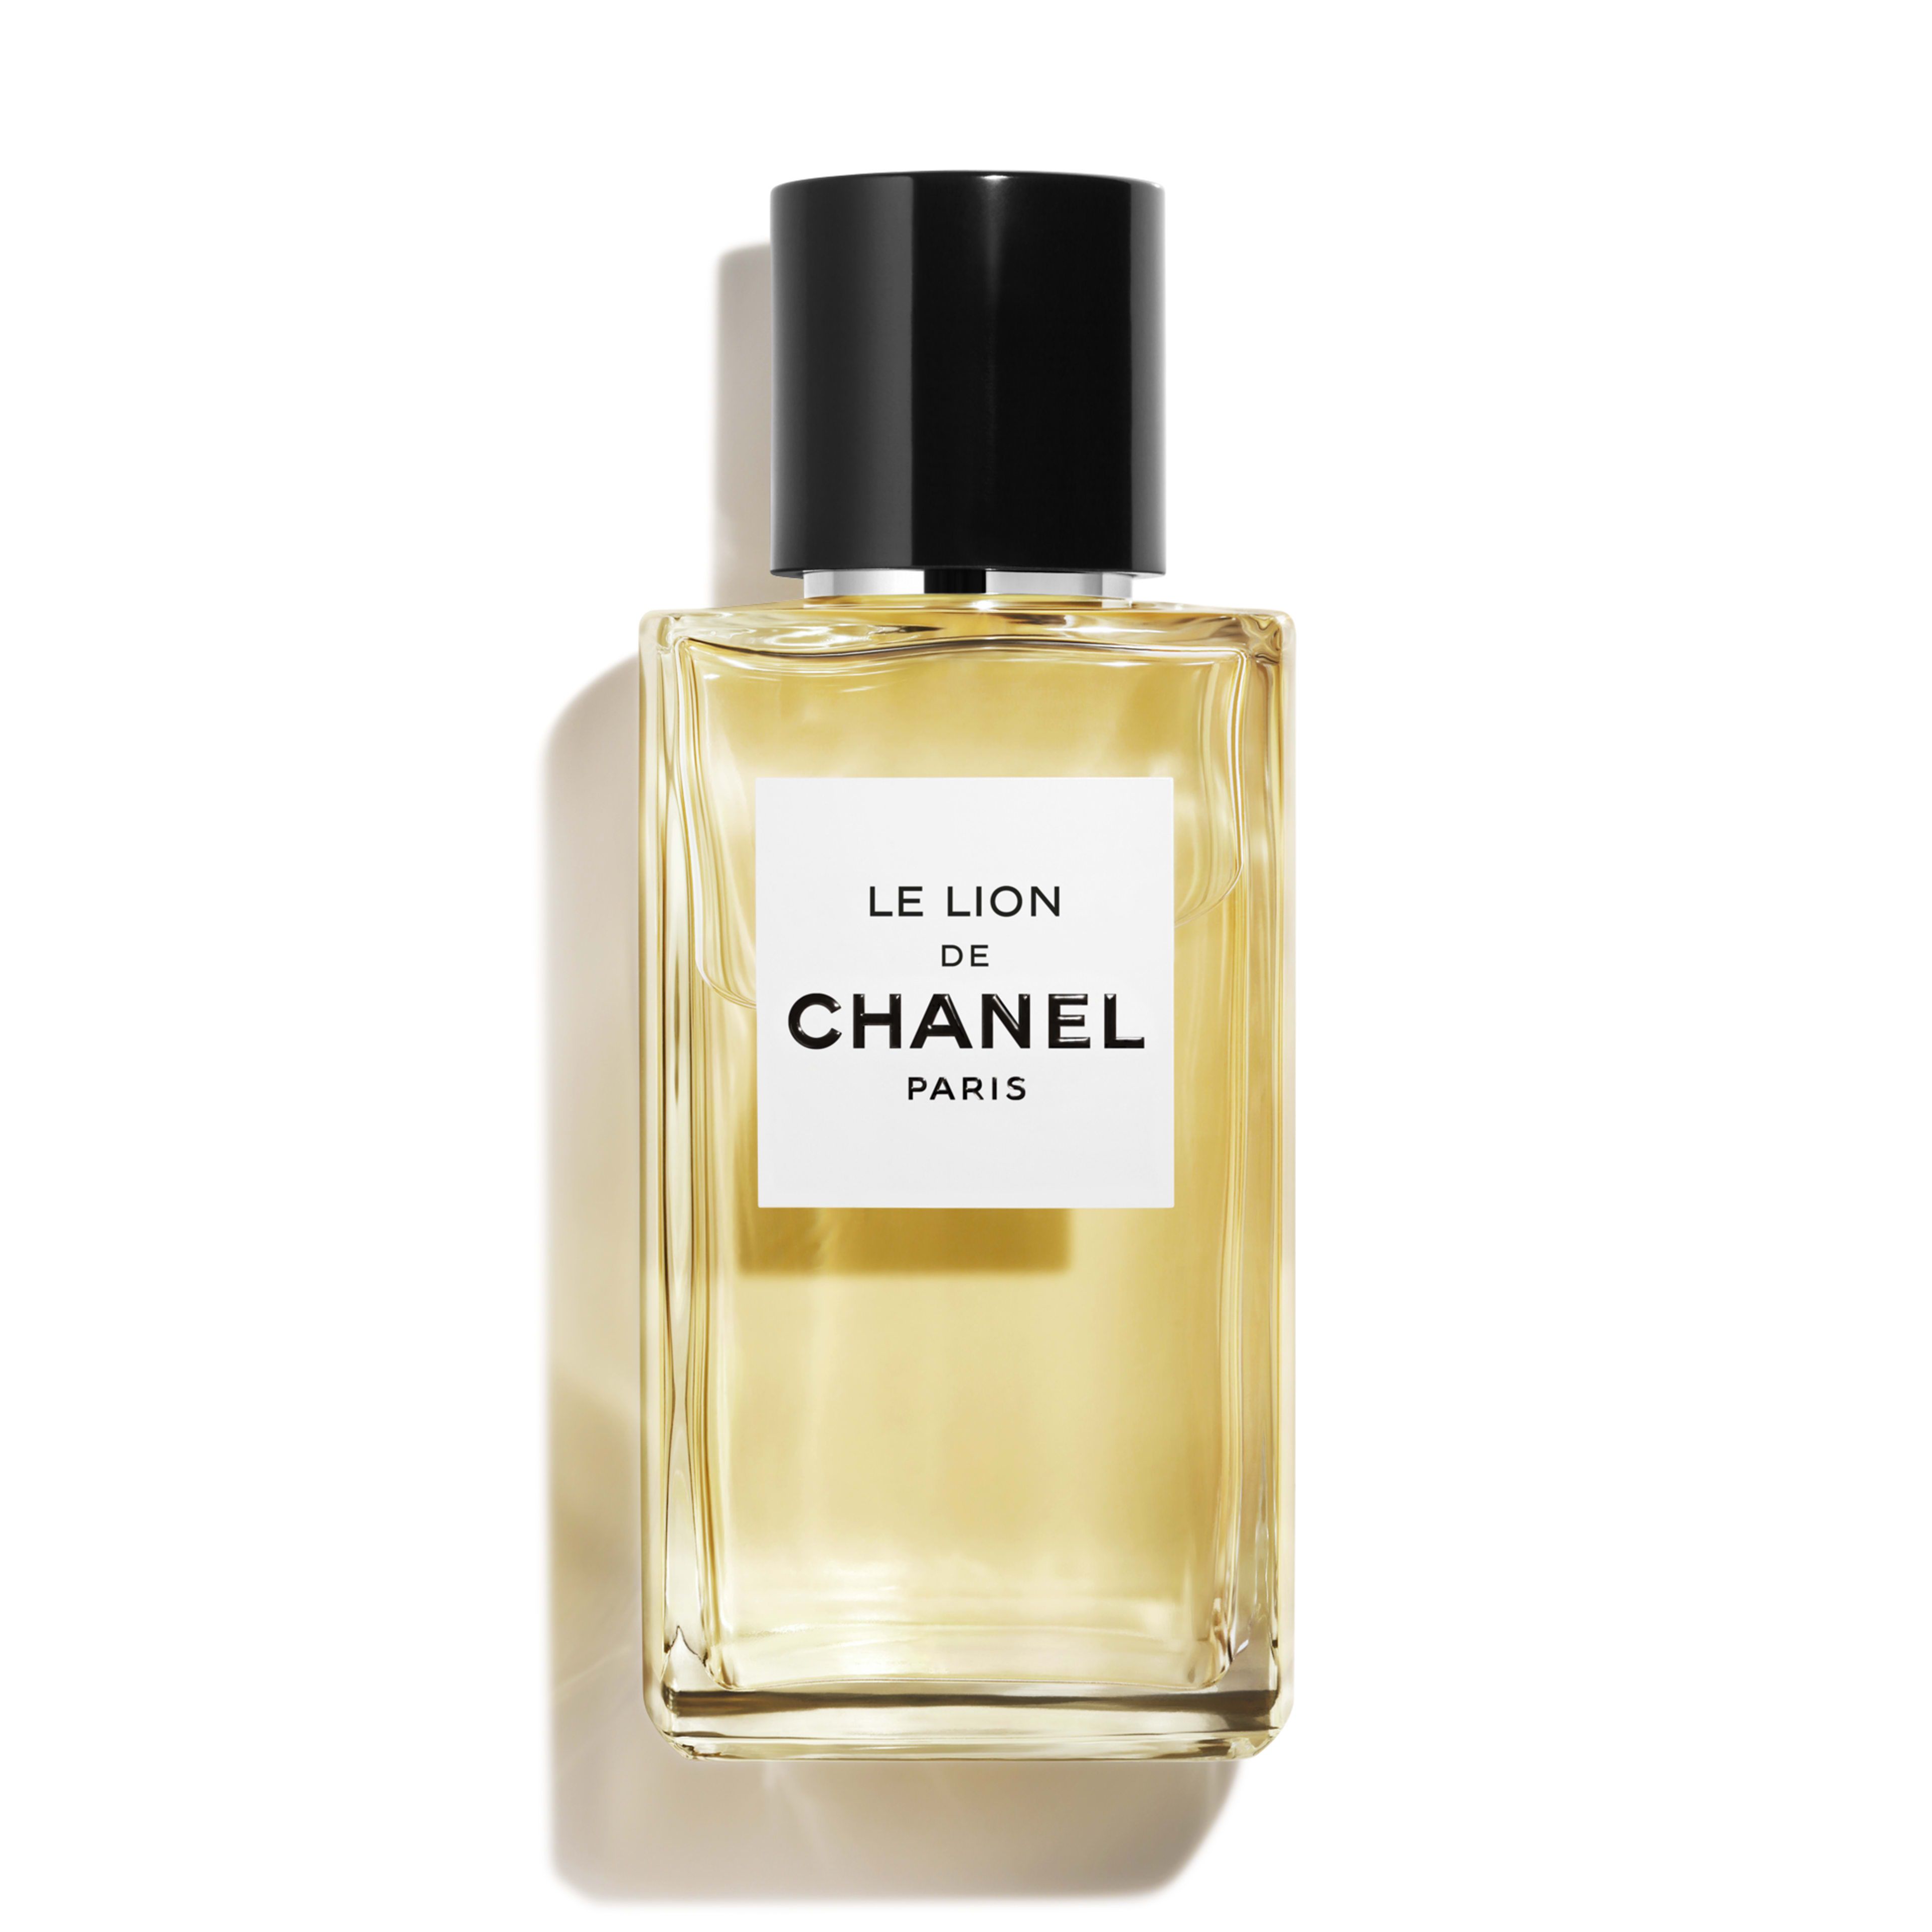 LE LION DE CHANEL LES EXCLUSIFS DE CHANEL – Eau de Parfum